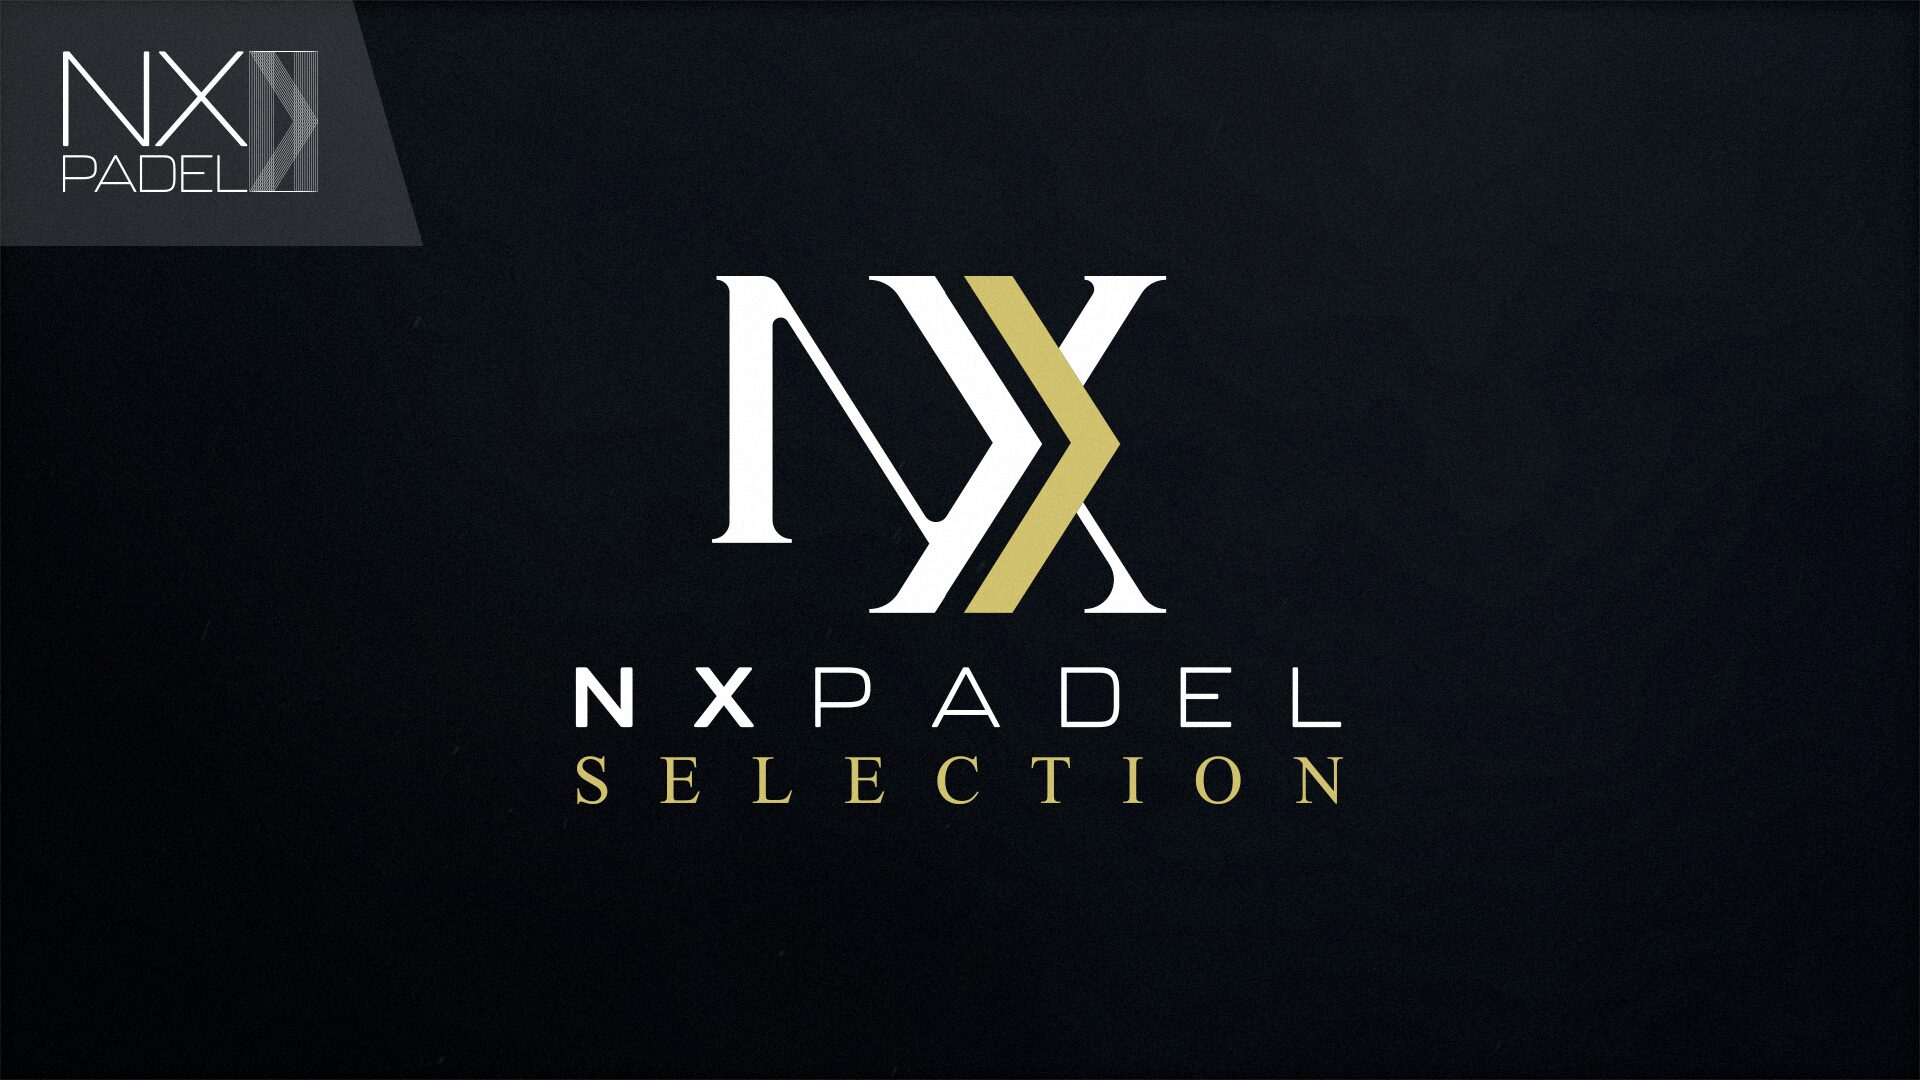 NXPadel Wybór: utwory padel specjalne edycje limitowane!